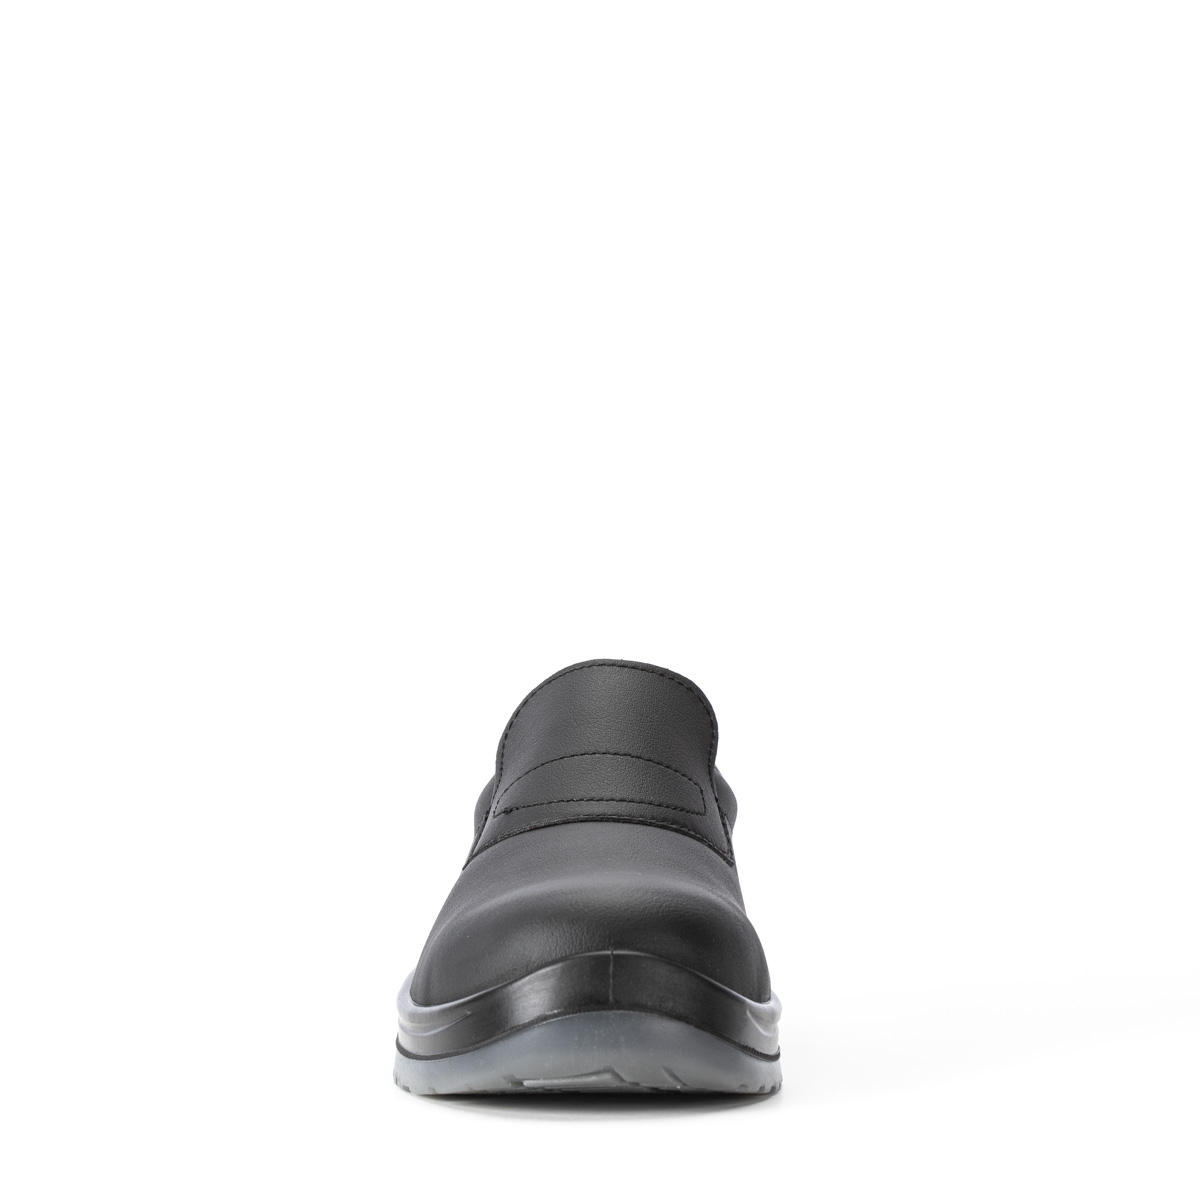 86203-01 - VENEZIA con SRC Crystal modello Sixton Safety di Shoes Codice S2 protezione Peak classe Chaussure -